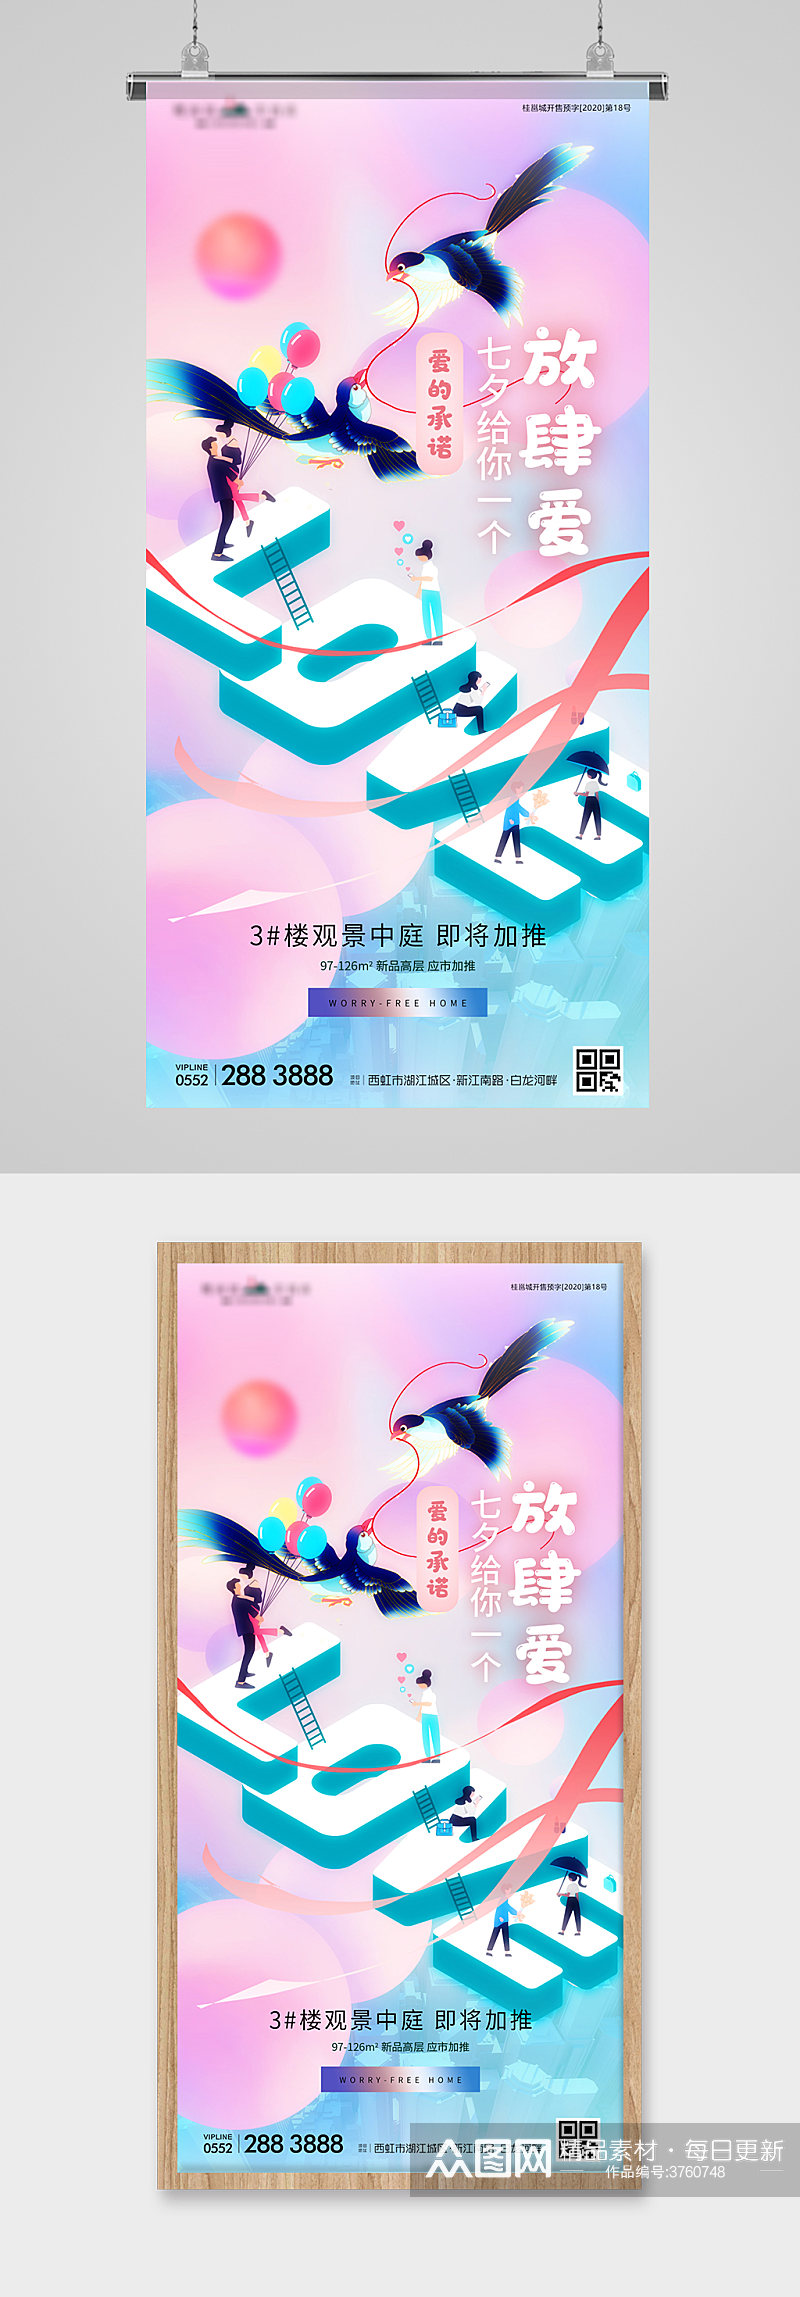 七夕节喜鹊字体地产海报素材